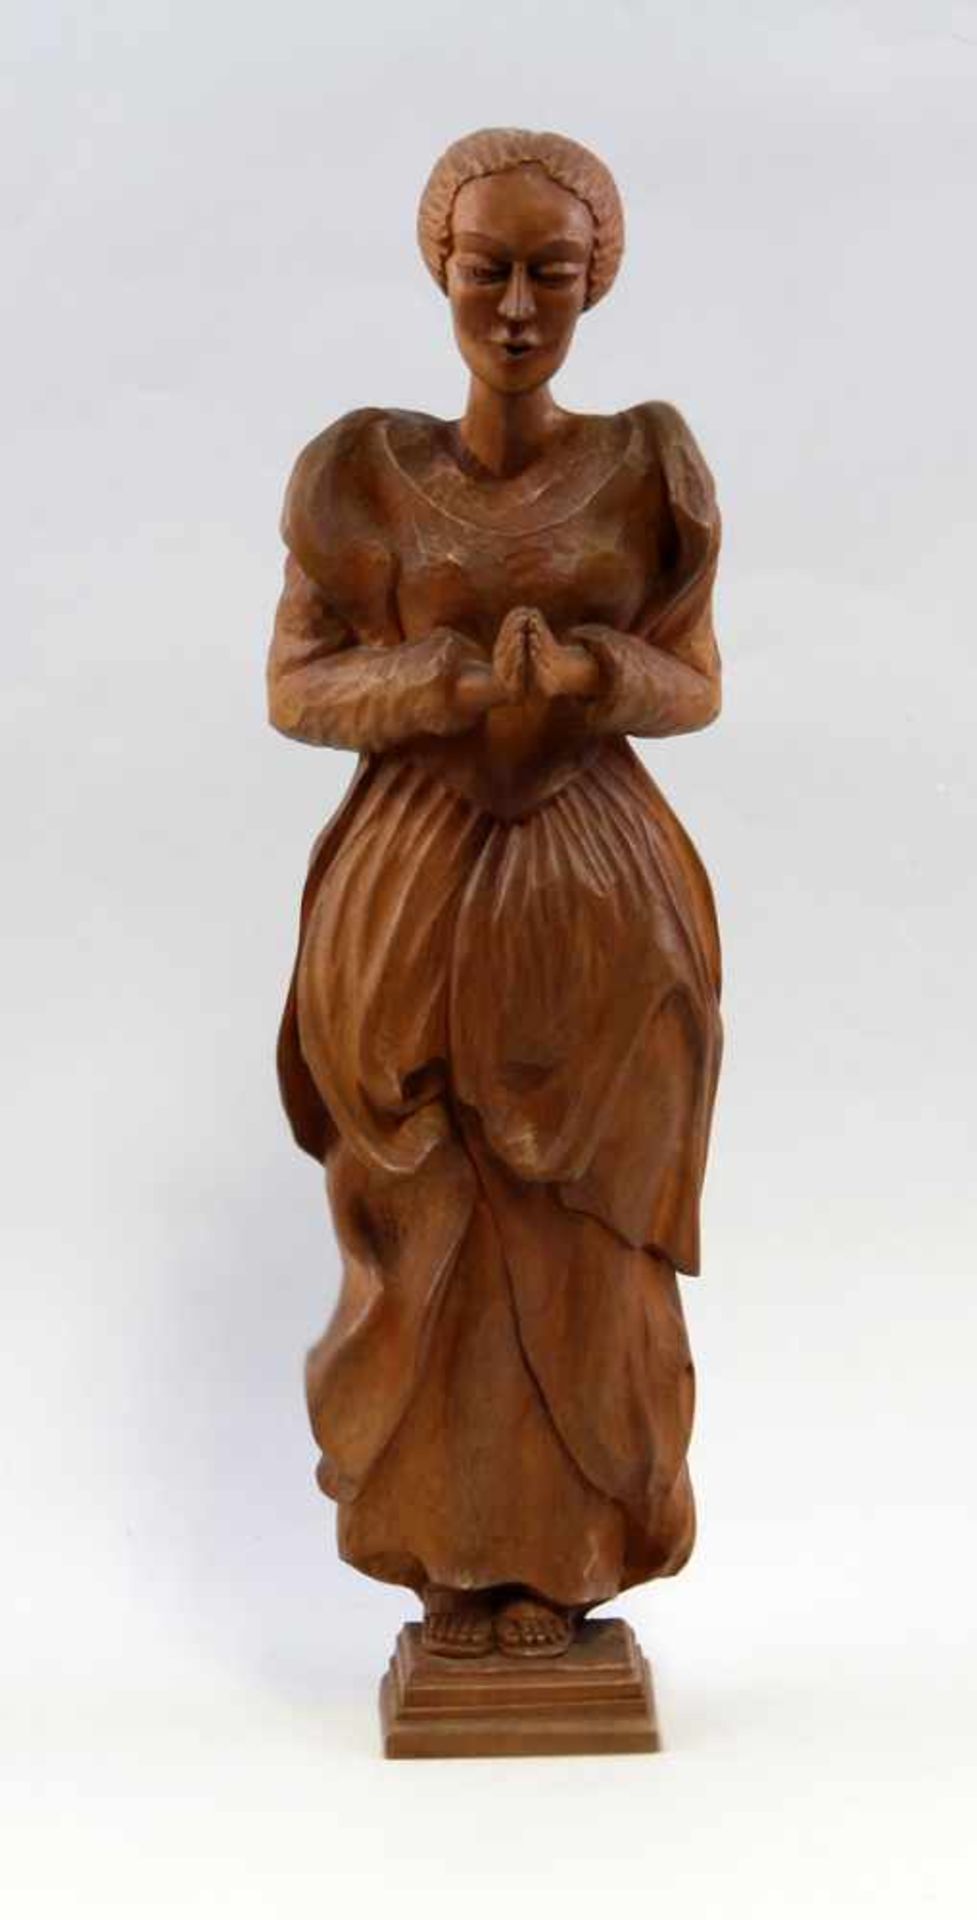 Holzfigur, Betende Frauwohl um 1930, Holz geschnitzt, detaillierte, künstlerische Ausführung einer